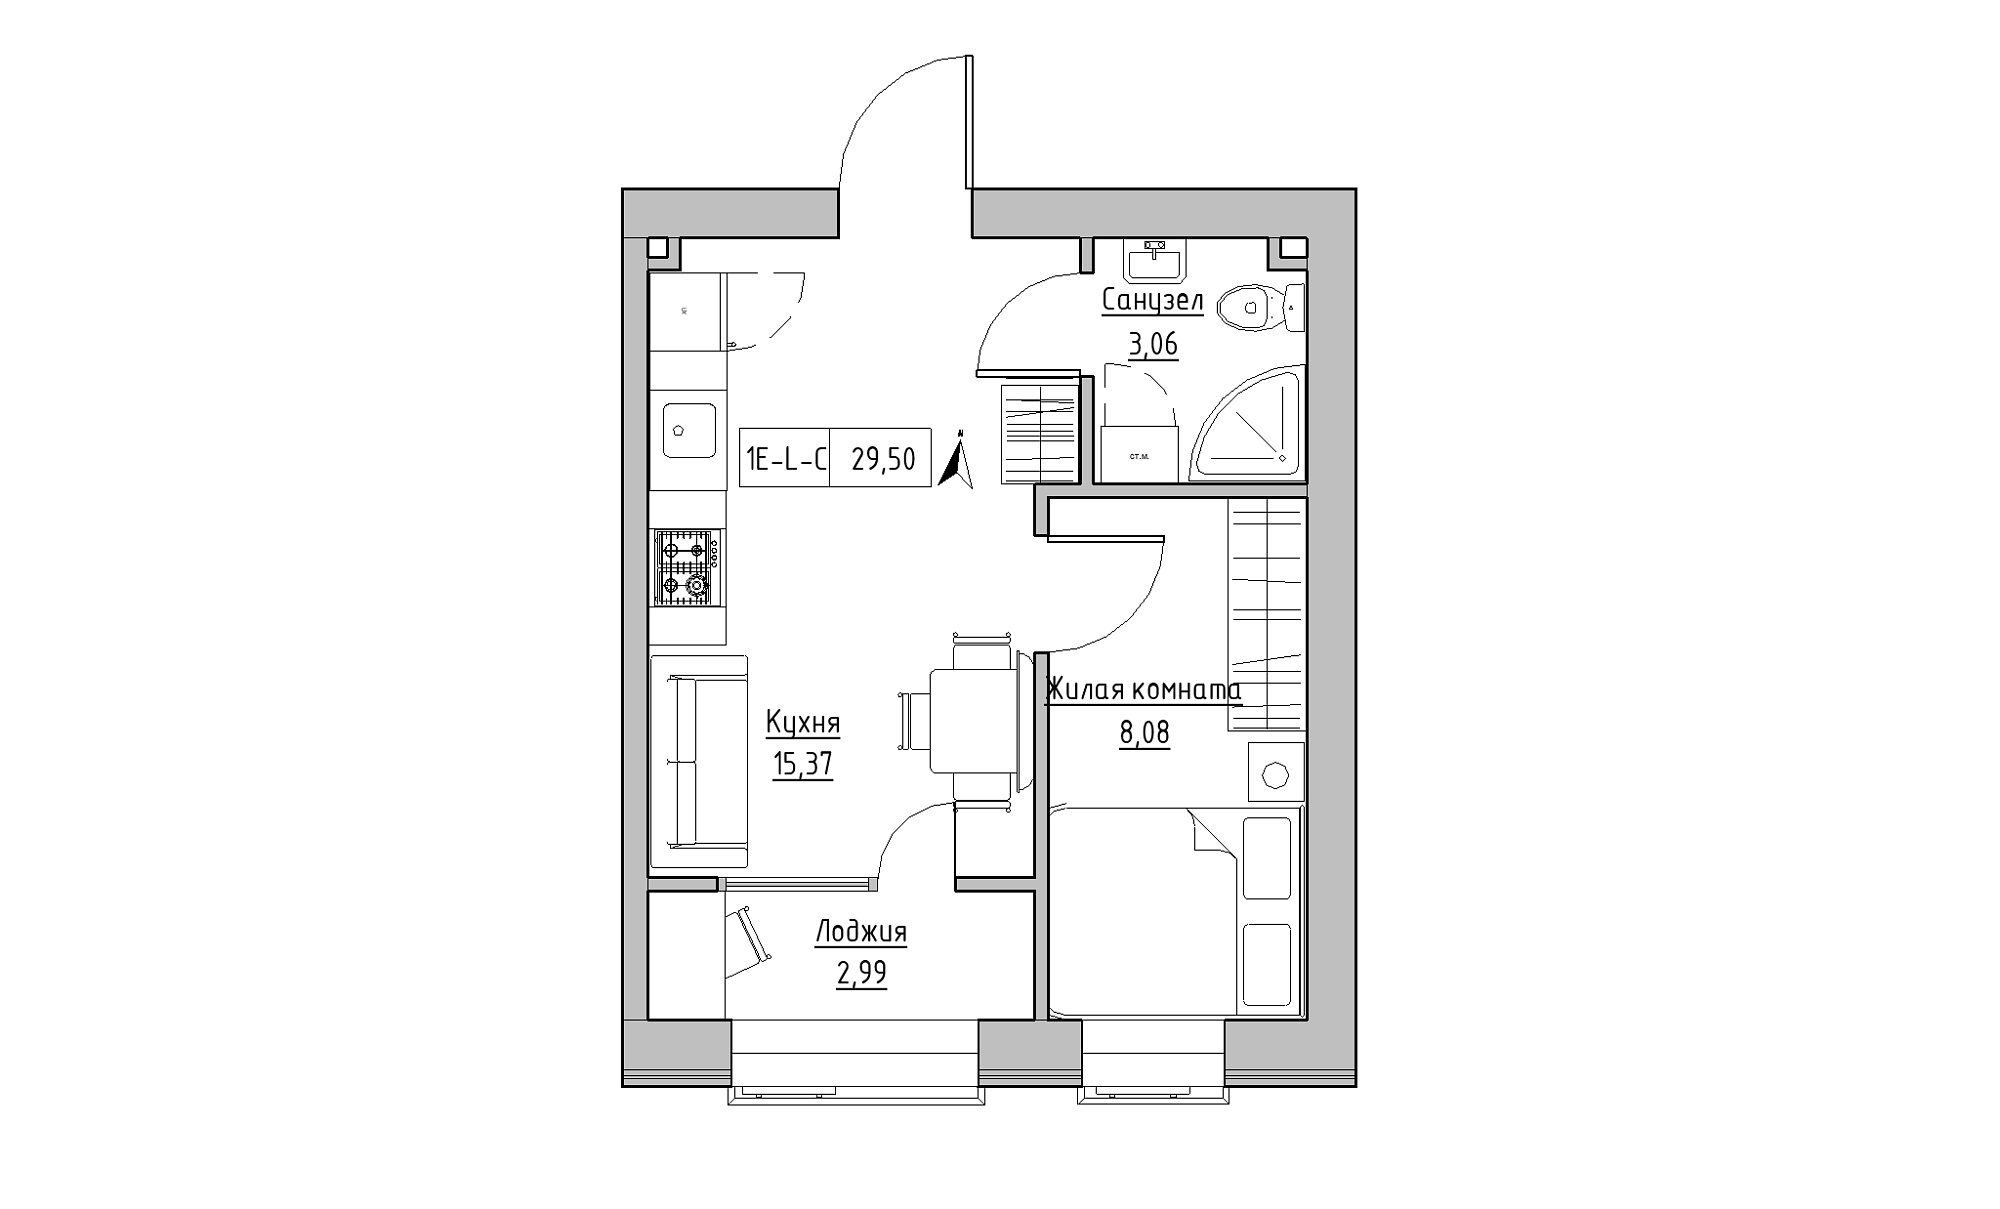 Планування 1-к квартира площею 29.5м2, KS-016-04/0006.